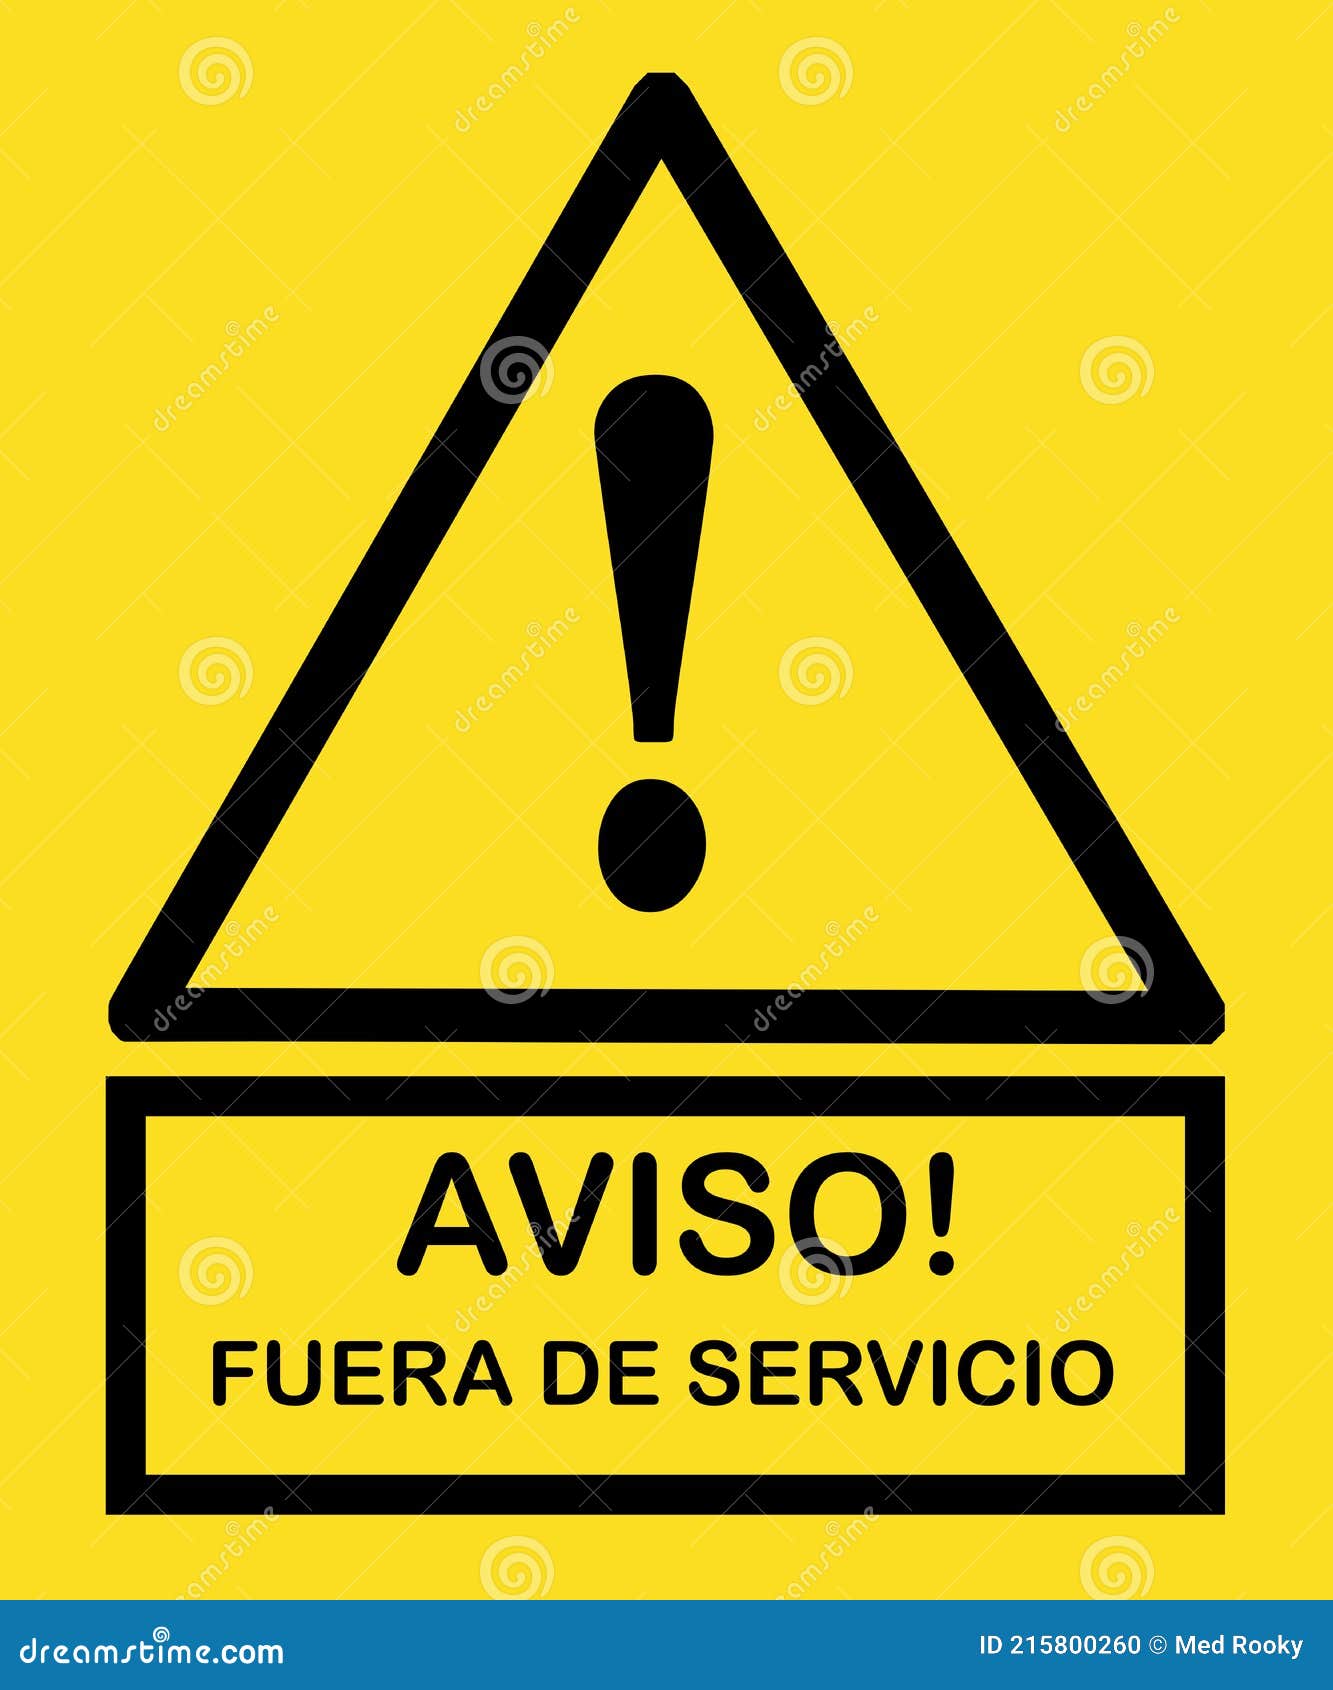 aviso fuera de servicio seÃÂ±al